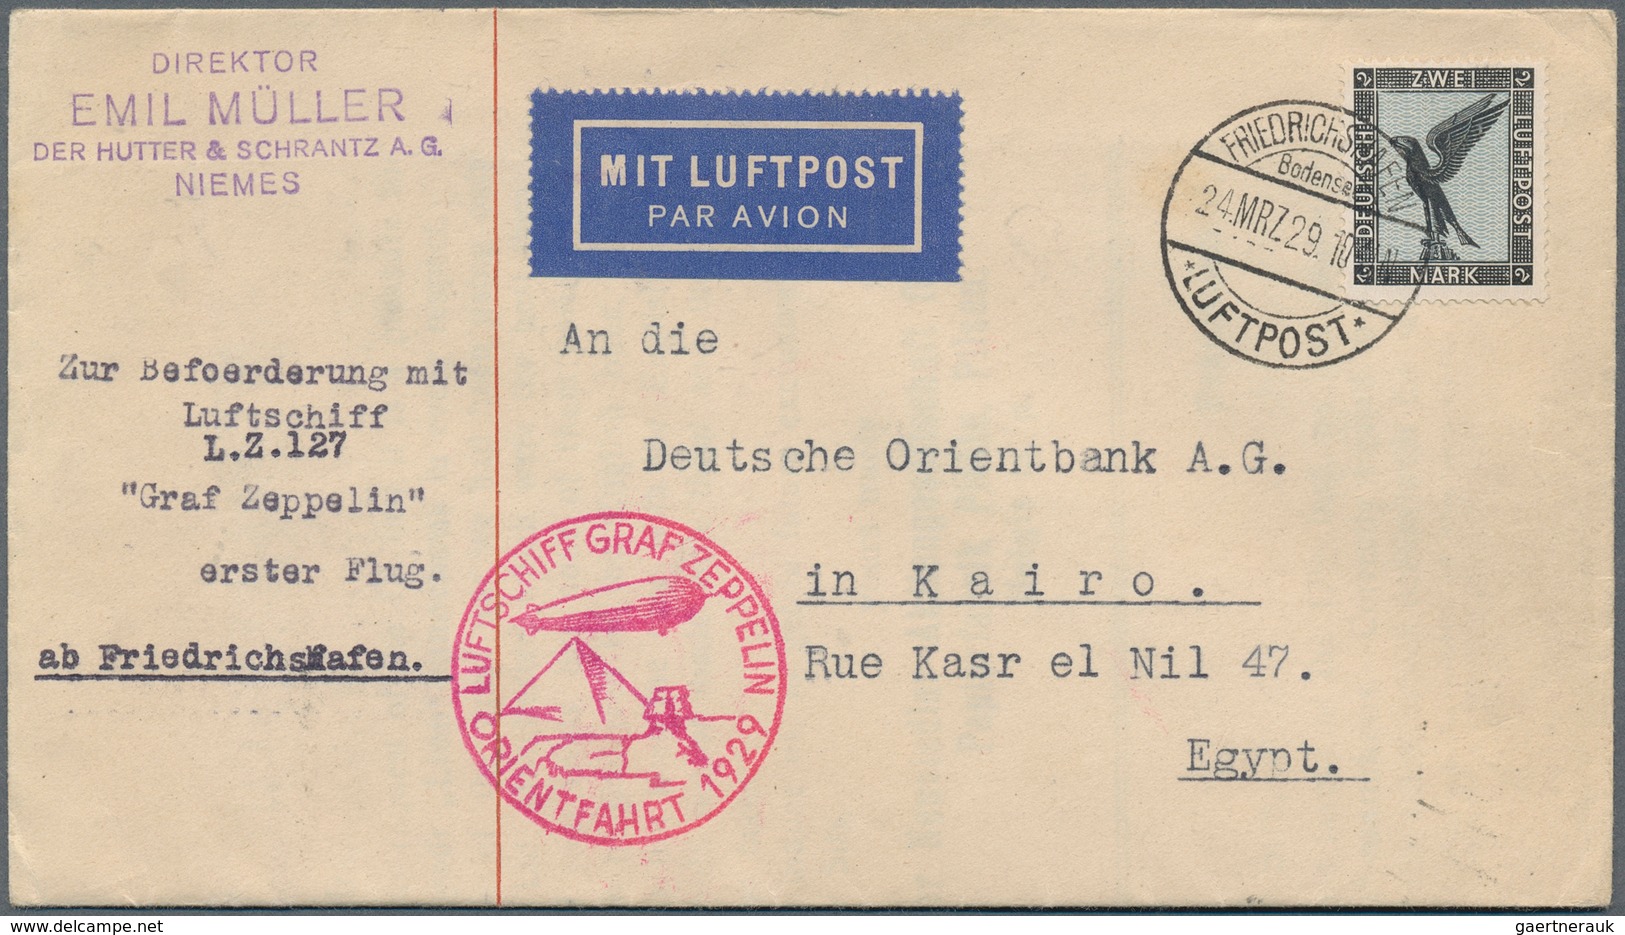 24840 Zeppelinpost Deutschland: 1909/37, Sammlung inkl. Doubletten mit ca. Zeppelin- und Luftpostbelege, d